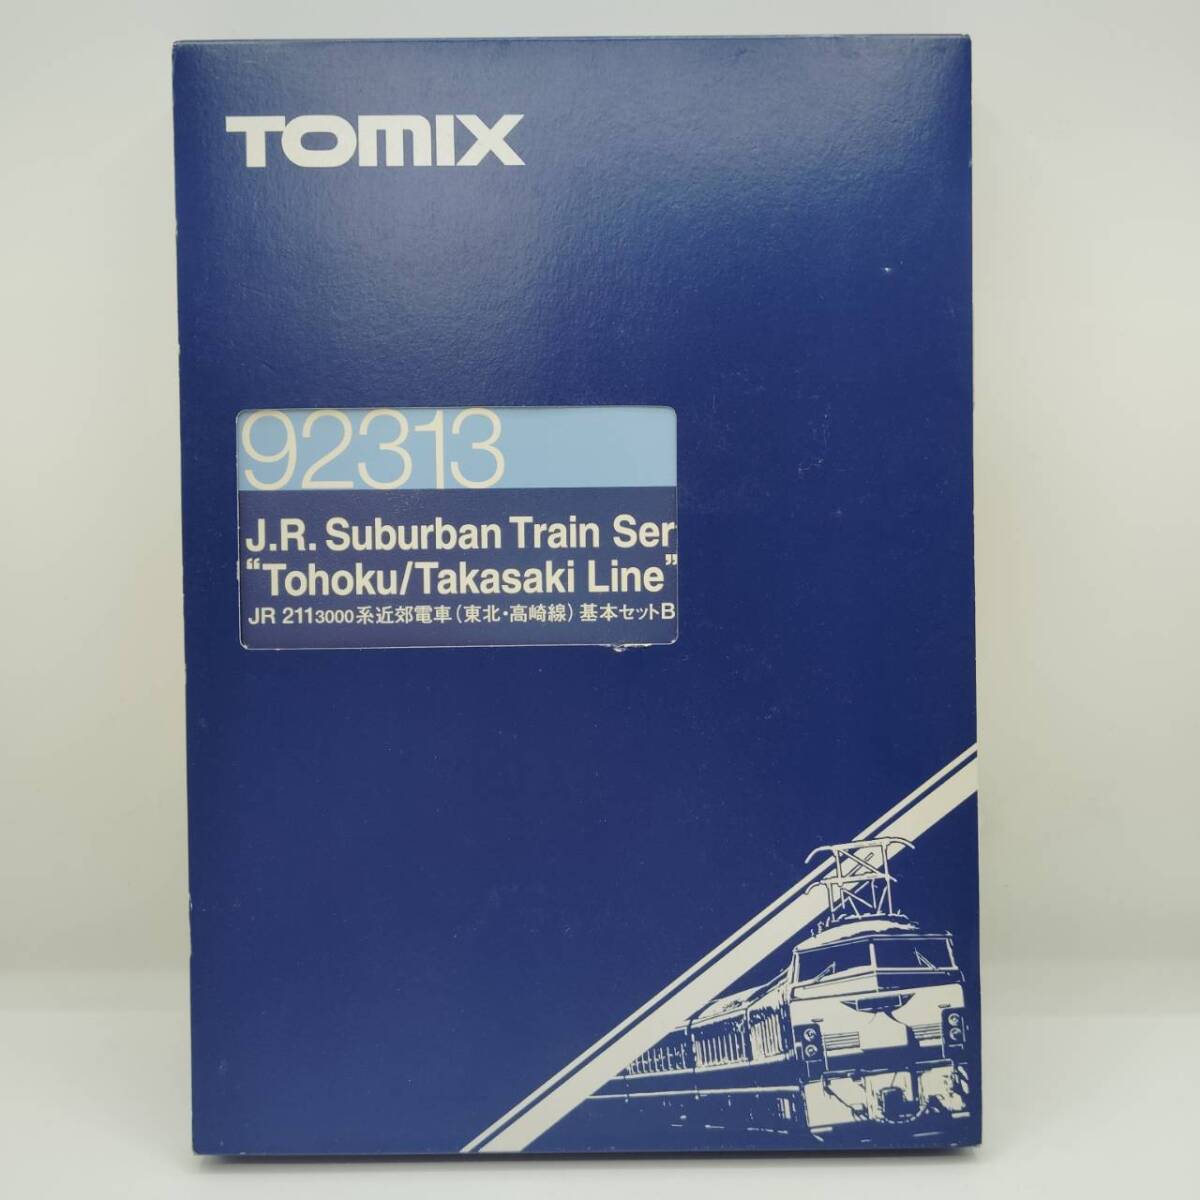 【完品】TOMIX 92313 JR 211-3000系 近郊電車 東北・高崎線 基本セット B 5両 セット Nゲージ 鉄道模型 / トミックス Tohoku Takasaki Lineの画像1